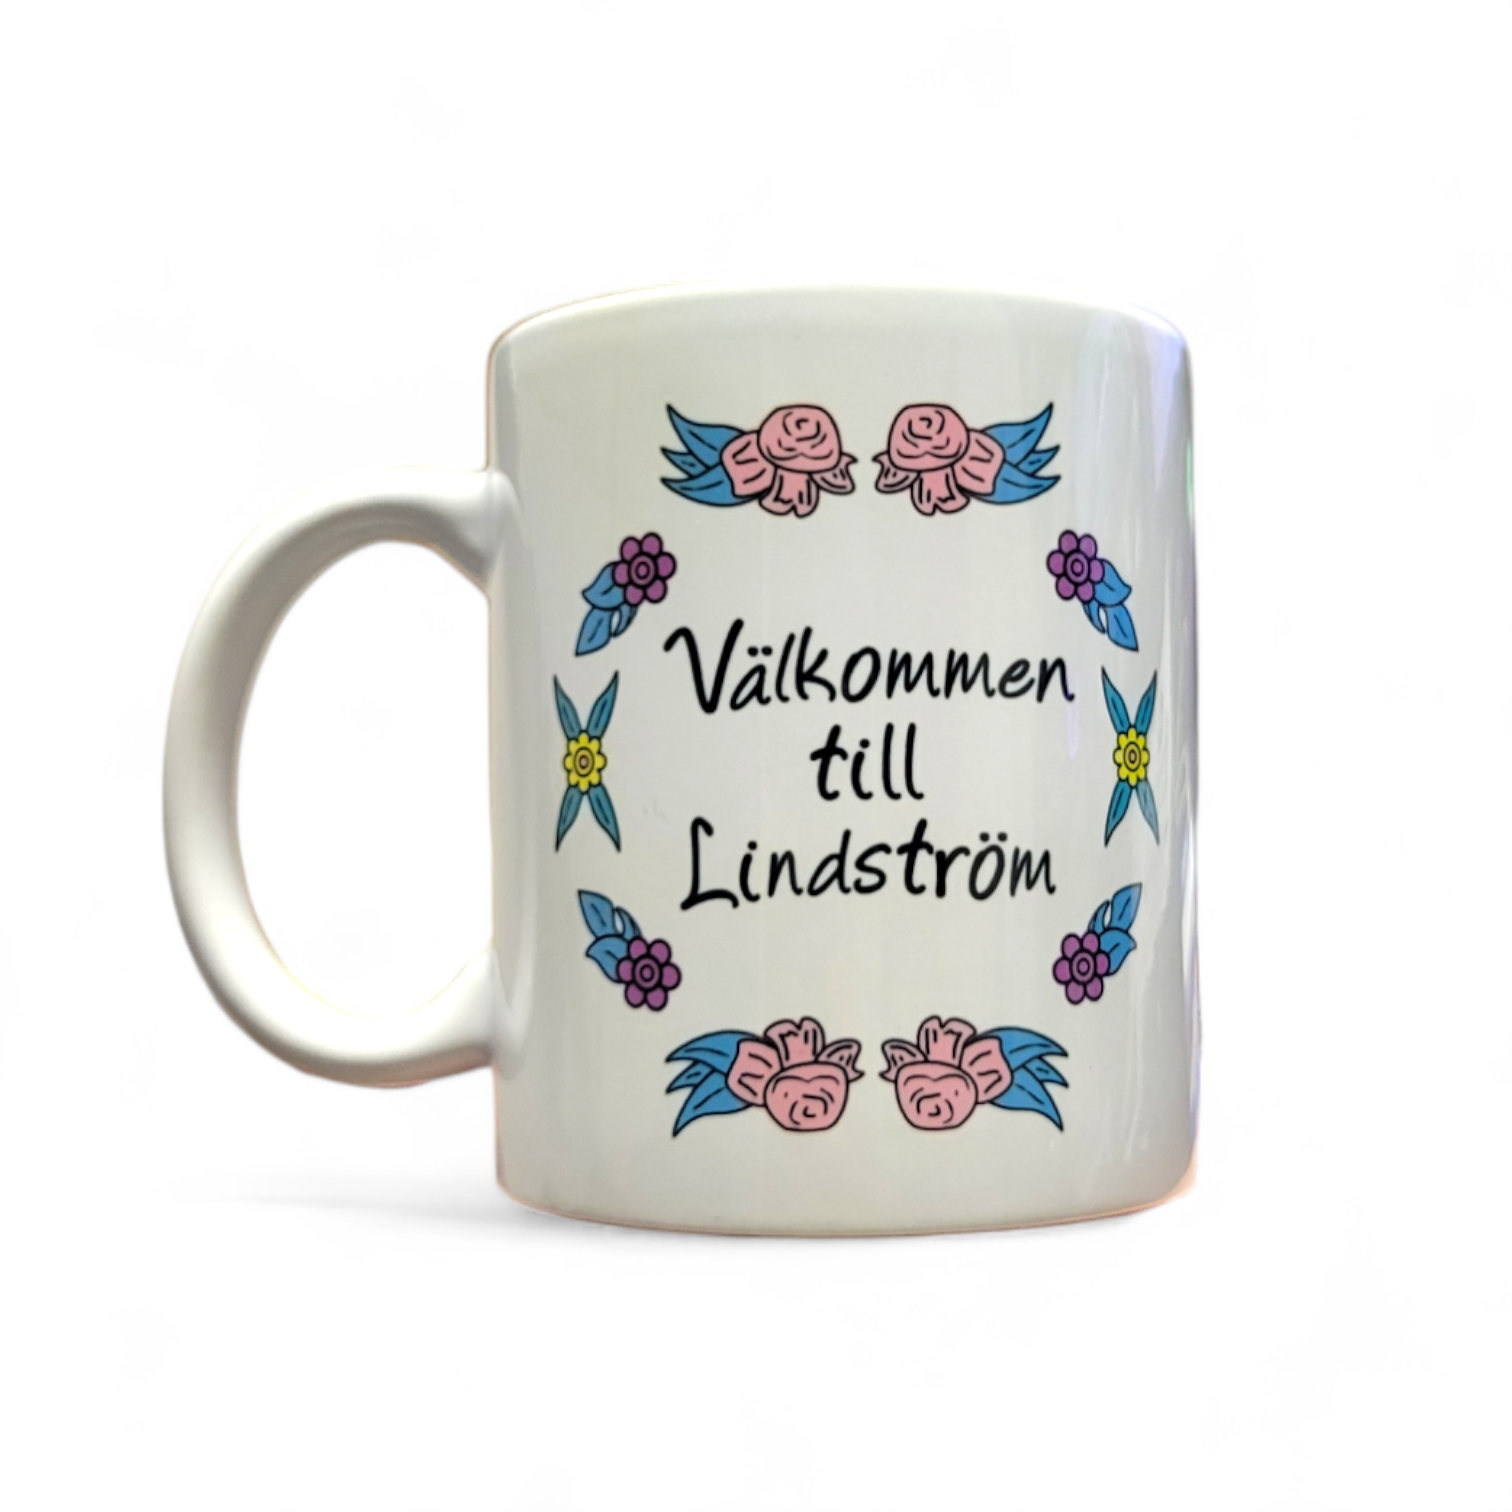 Mug: "Välkommen till Lindstrom"